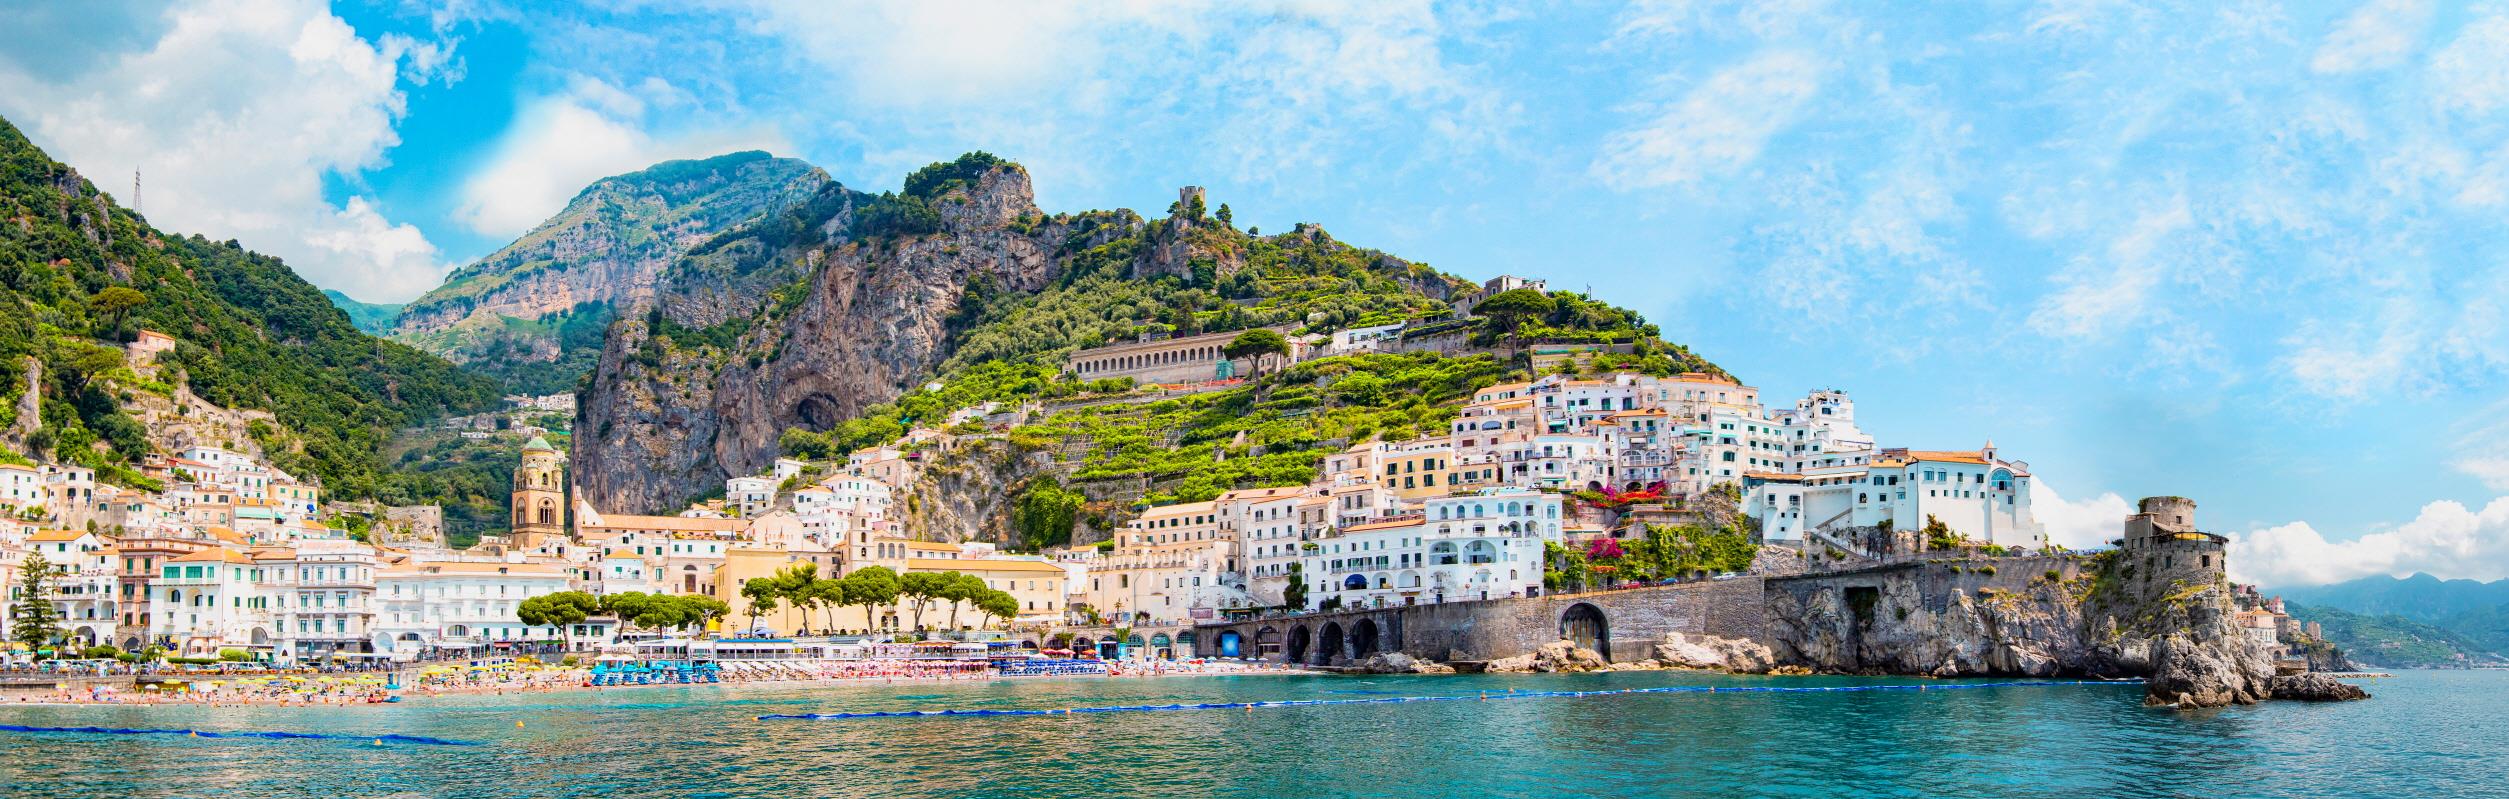 아말피 해안  Amalfi coast